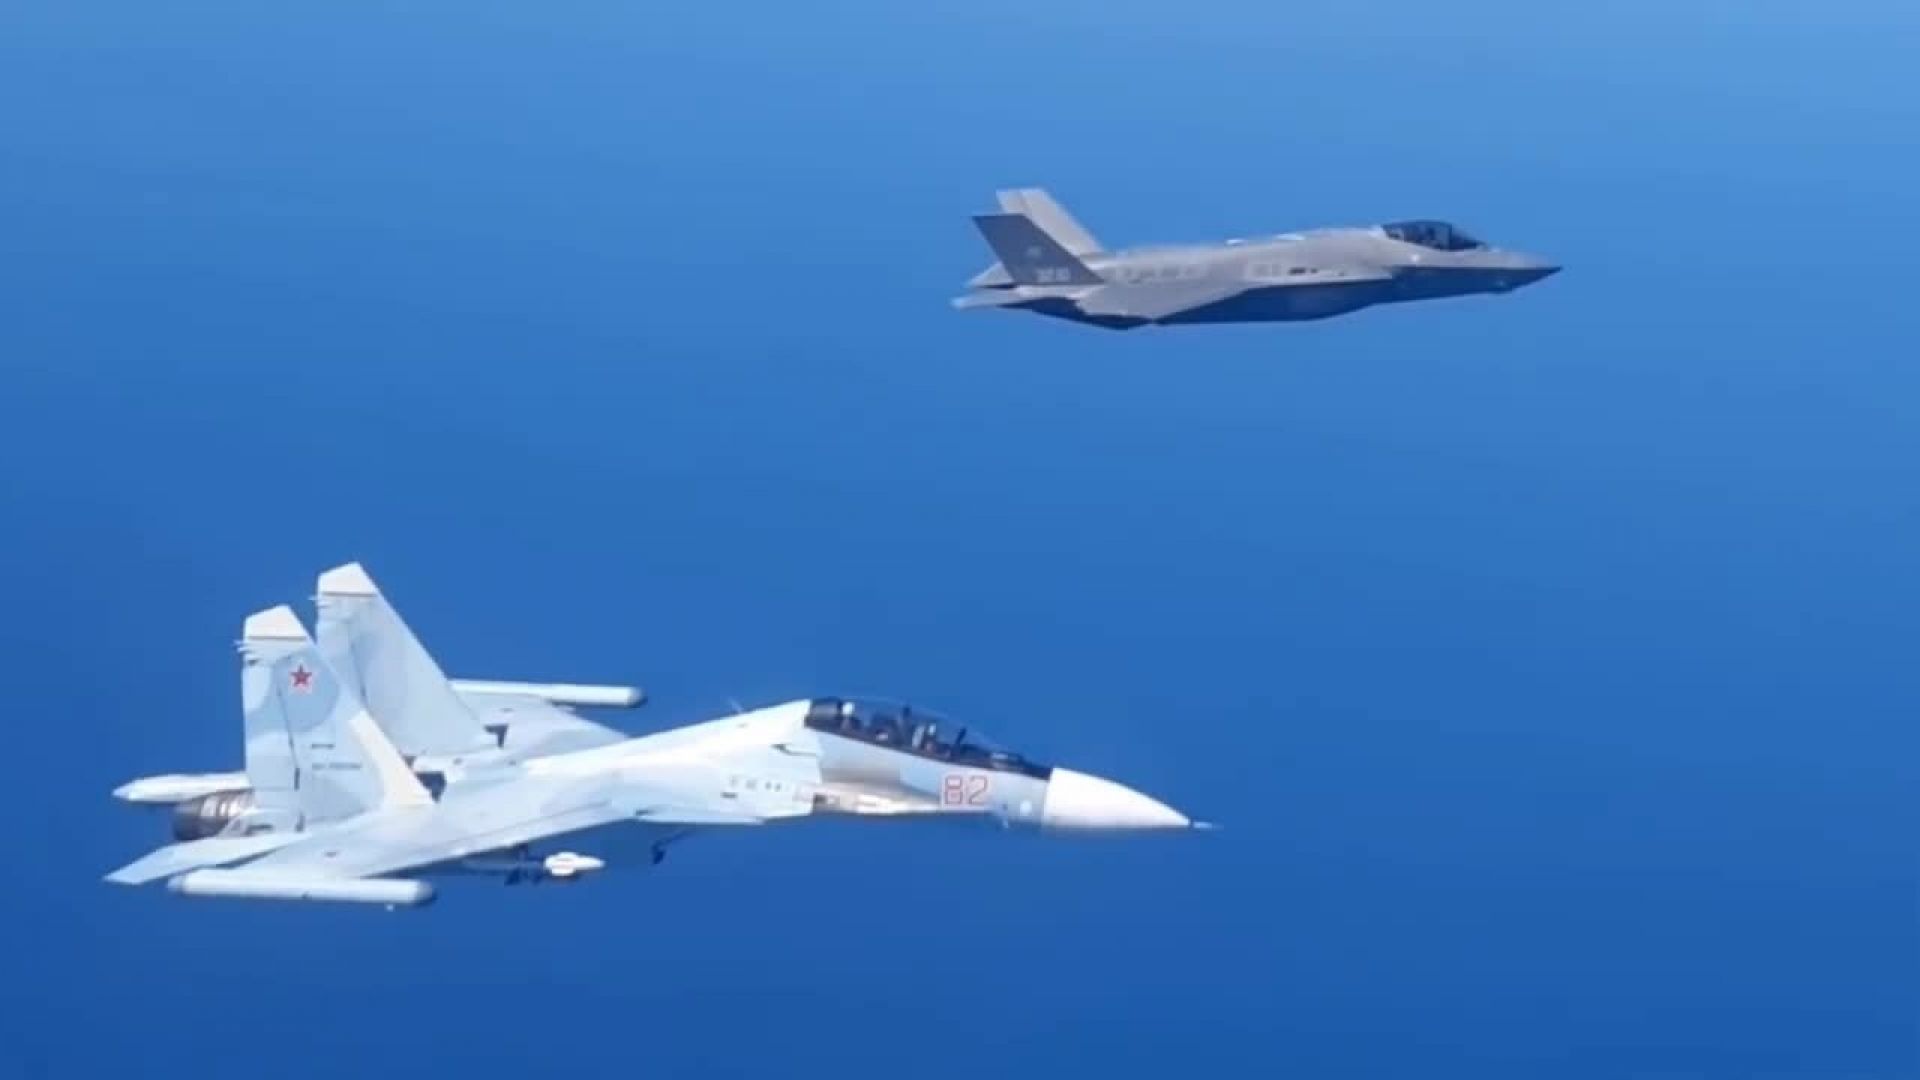 Заснеха първата среща на руски изтребител Су-30 с натовски F-35 (снимки и видео)